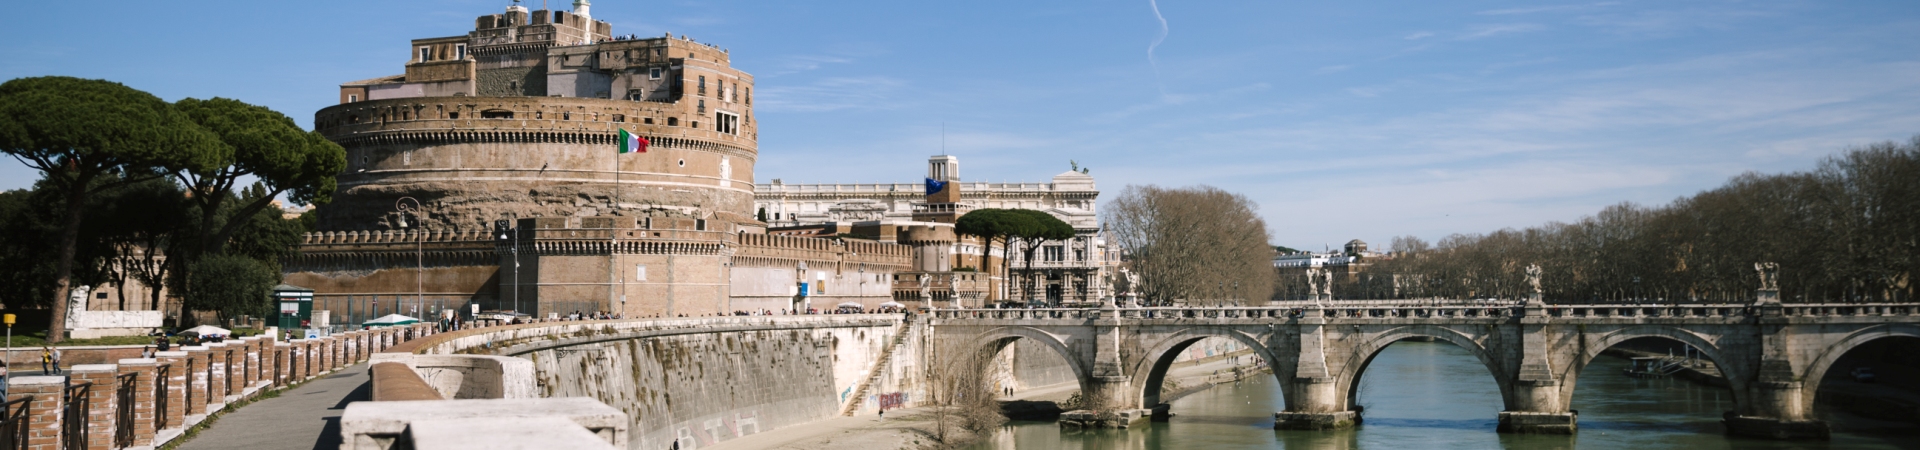 Italy Reads Program | John Cabot University | Rome | Italy